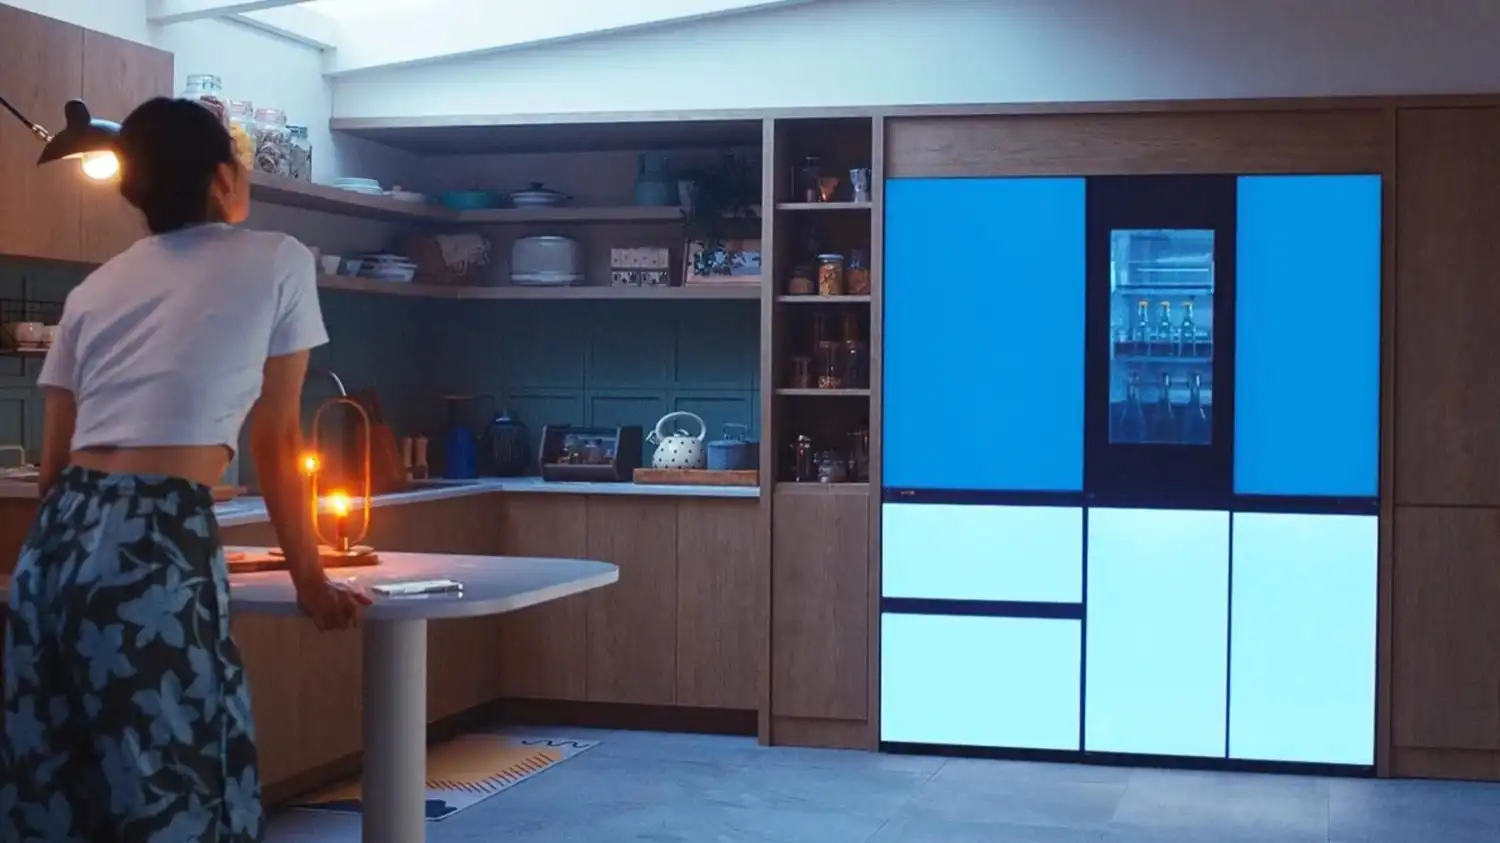 LG presentó refrigeradoras que cambian de color